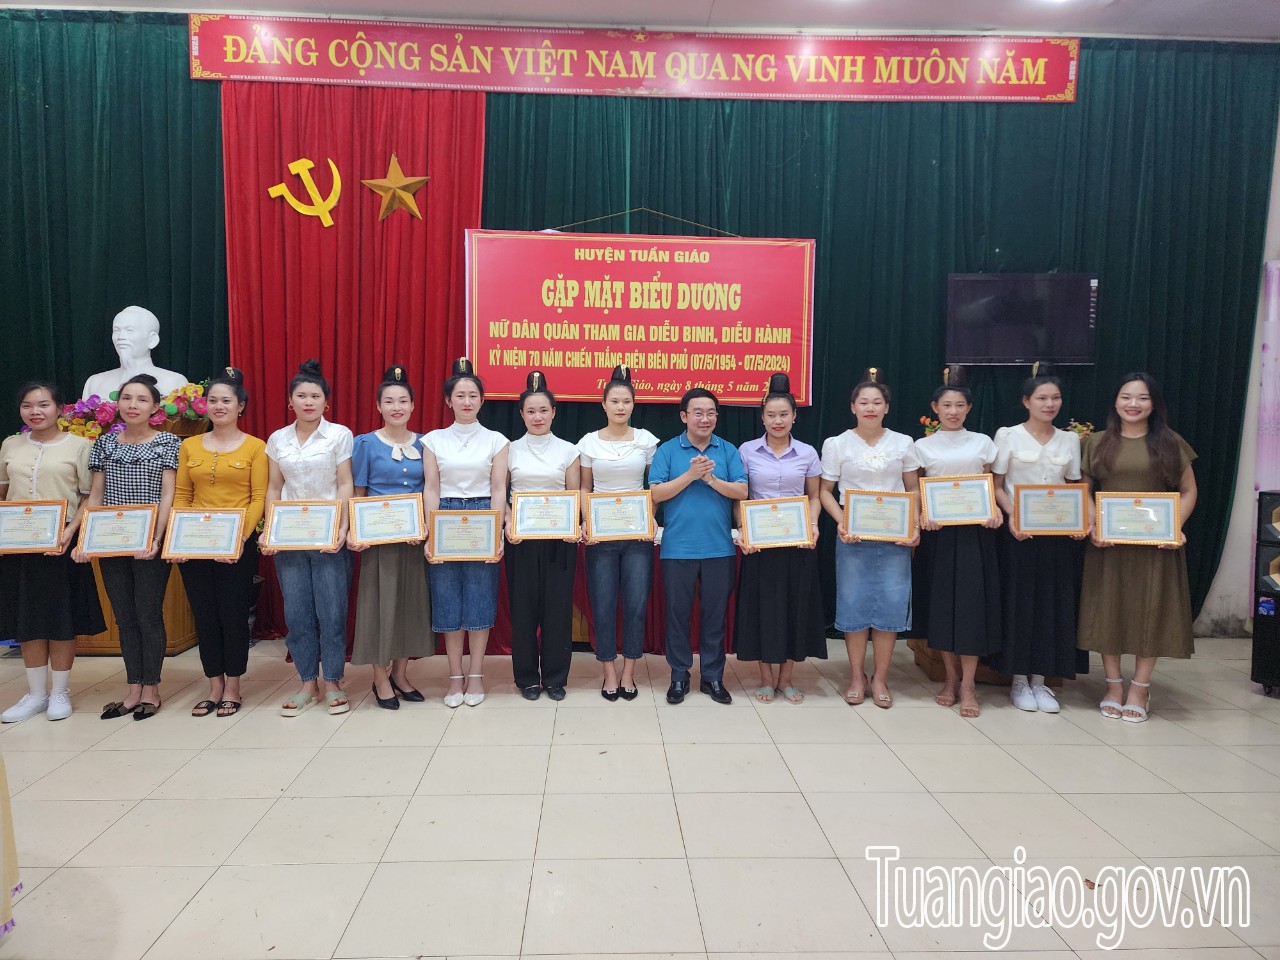 Tuần Giáo gặp mặt biểu dương nữ dân quân tham gia diễu binh, diễu hành kỷ niệm 70 năm Chiến thắng Điện Biên Phủ